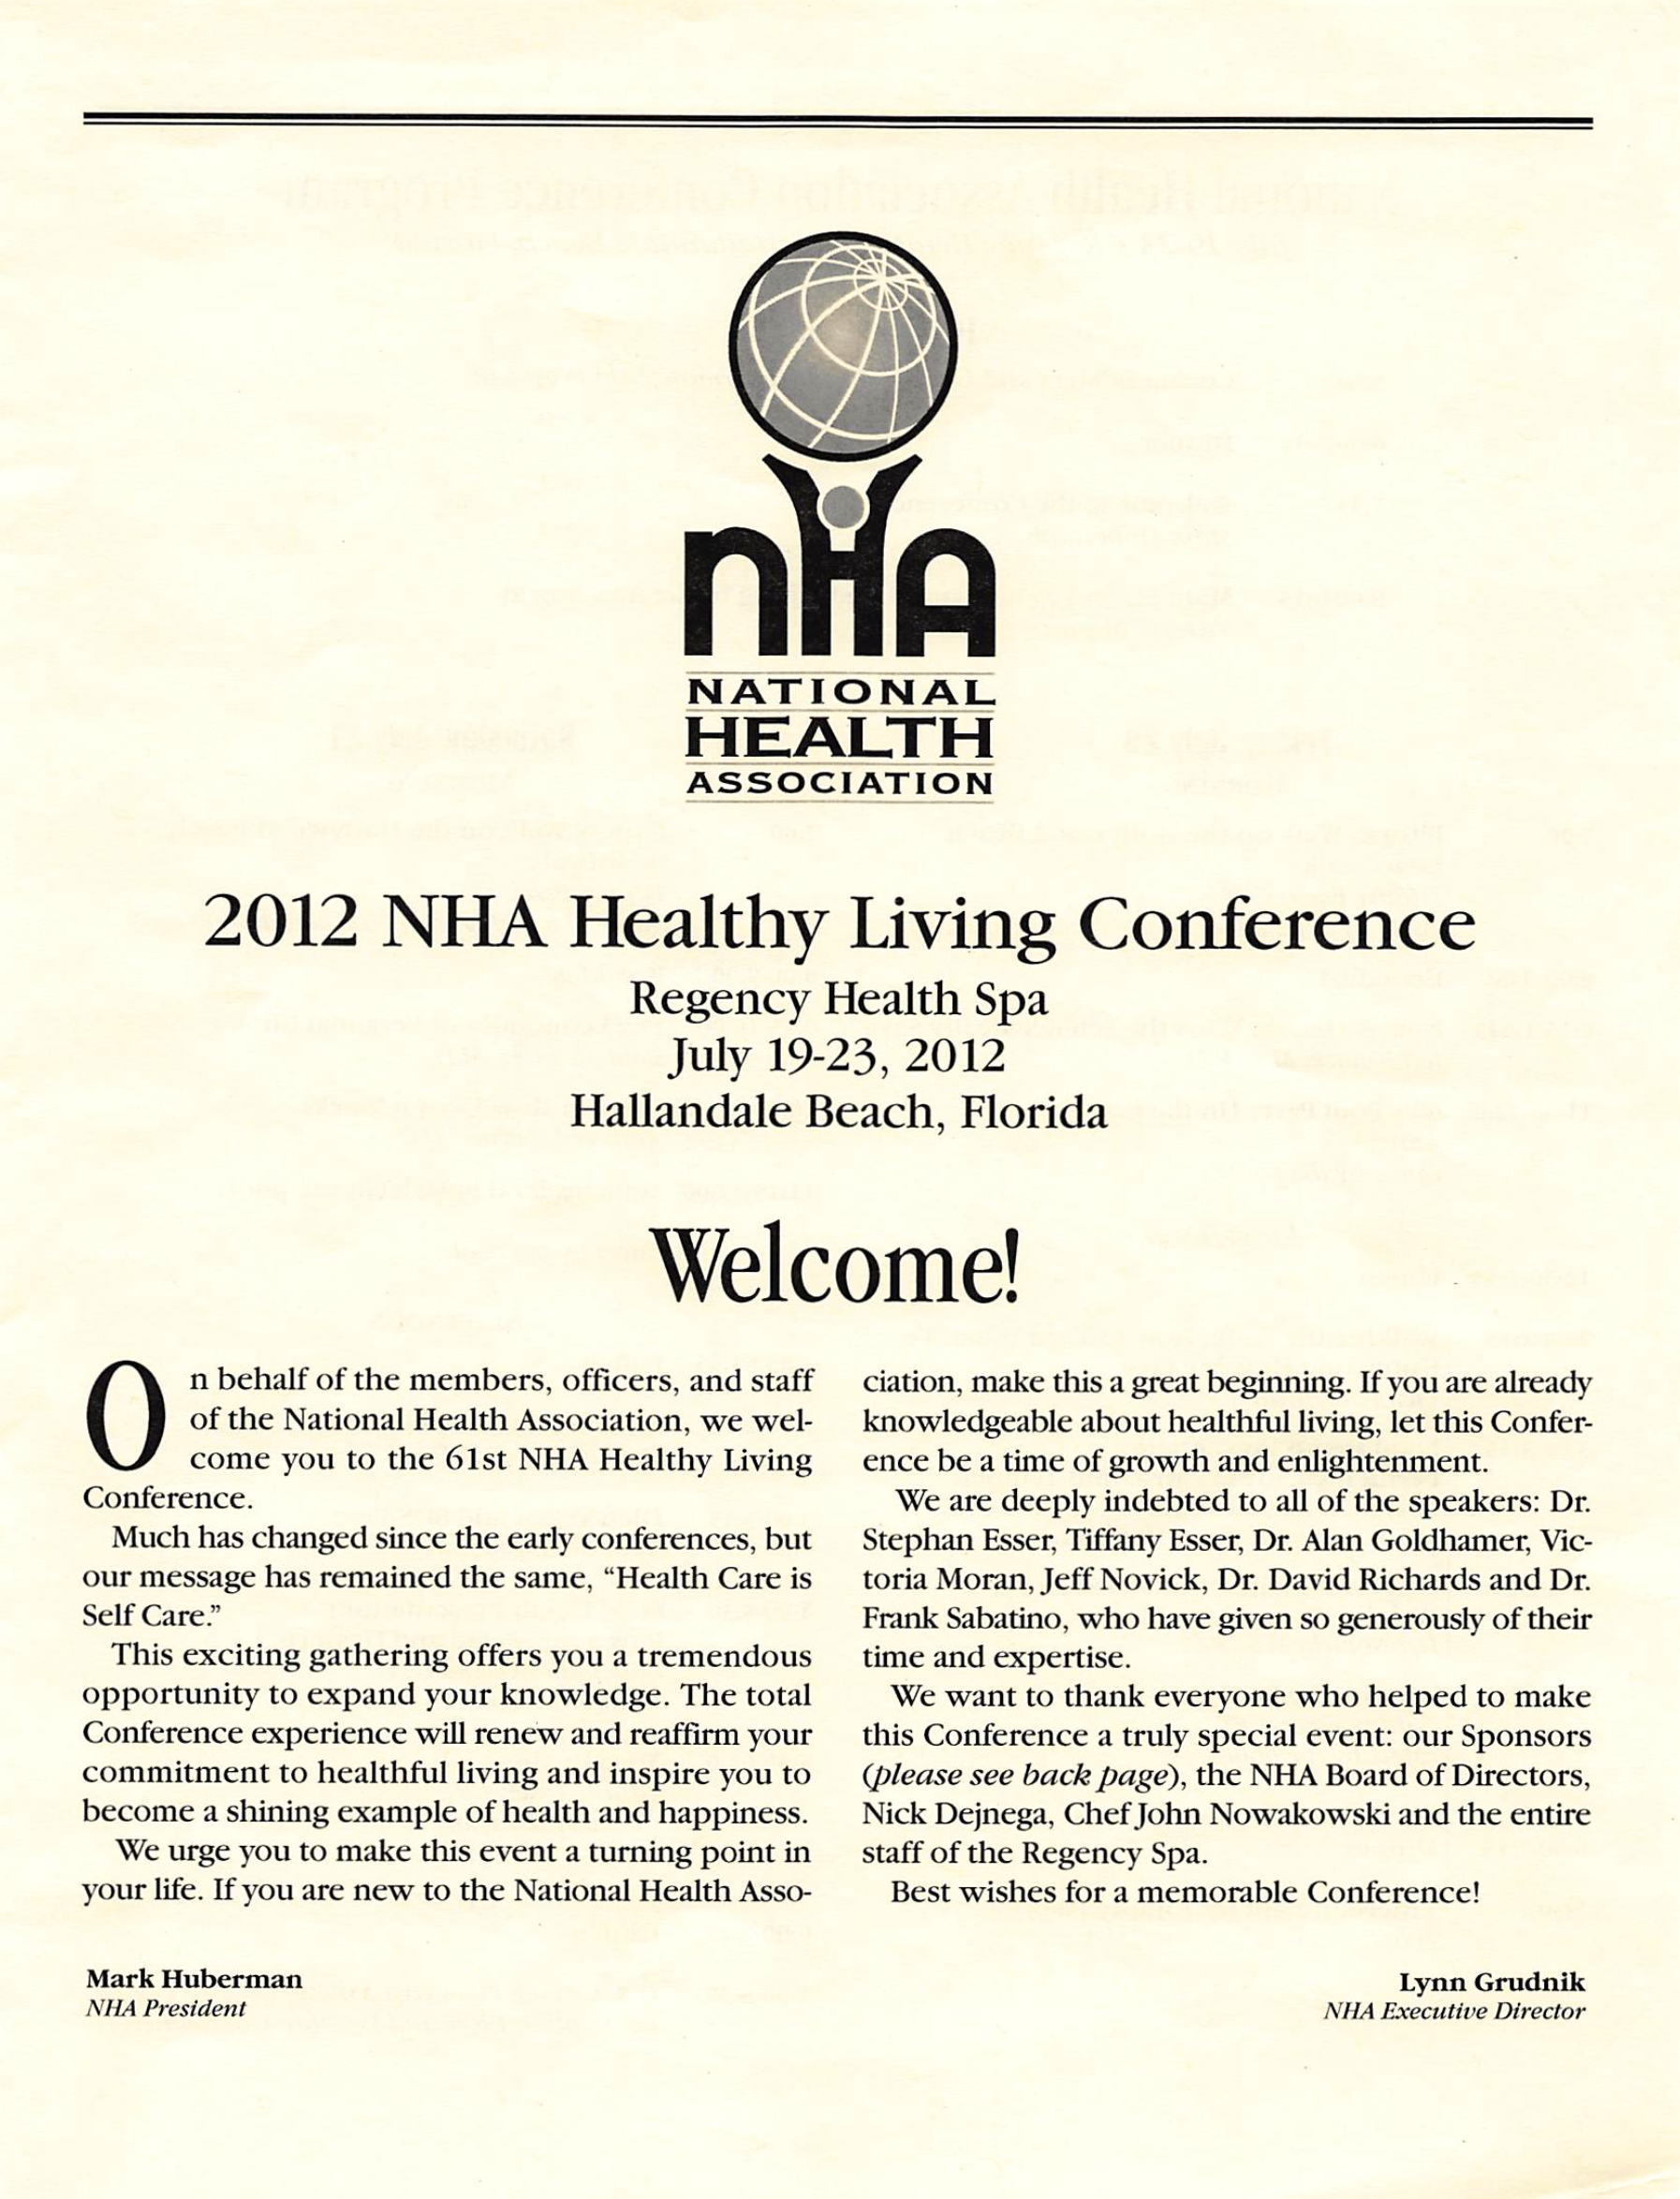 Conference Program. Hallandale, 2012